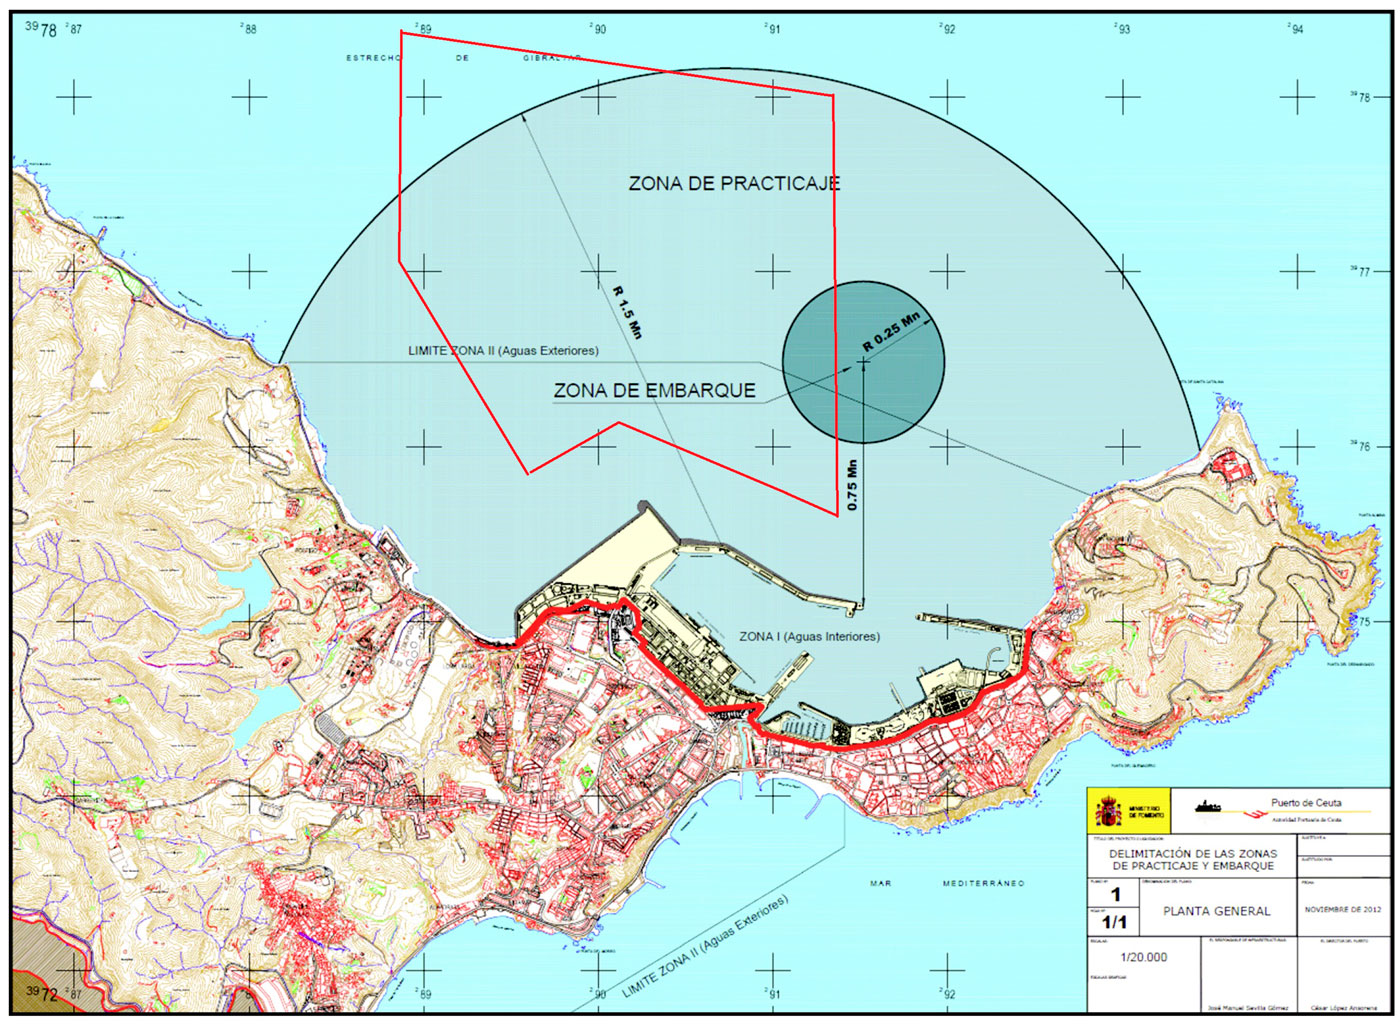 Vessels in Ceuta & OPL